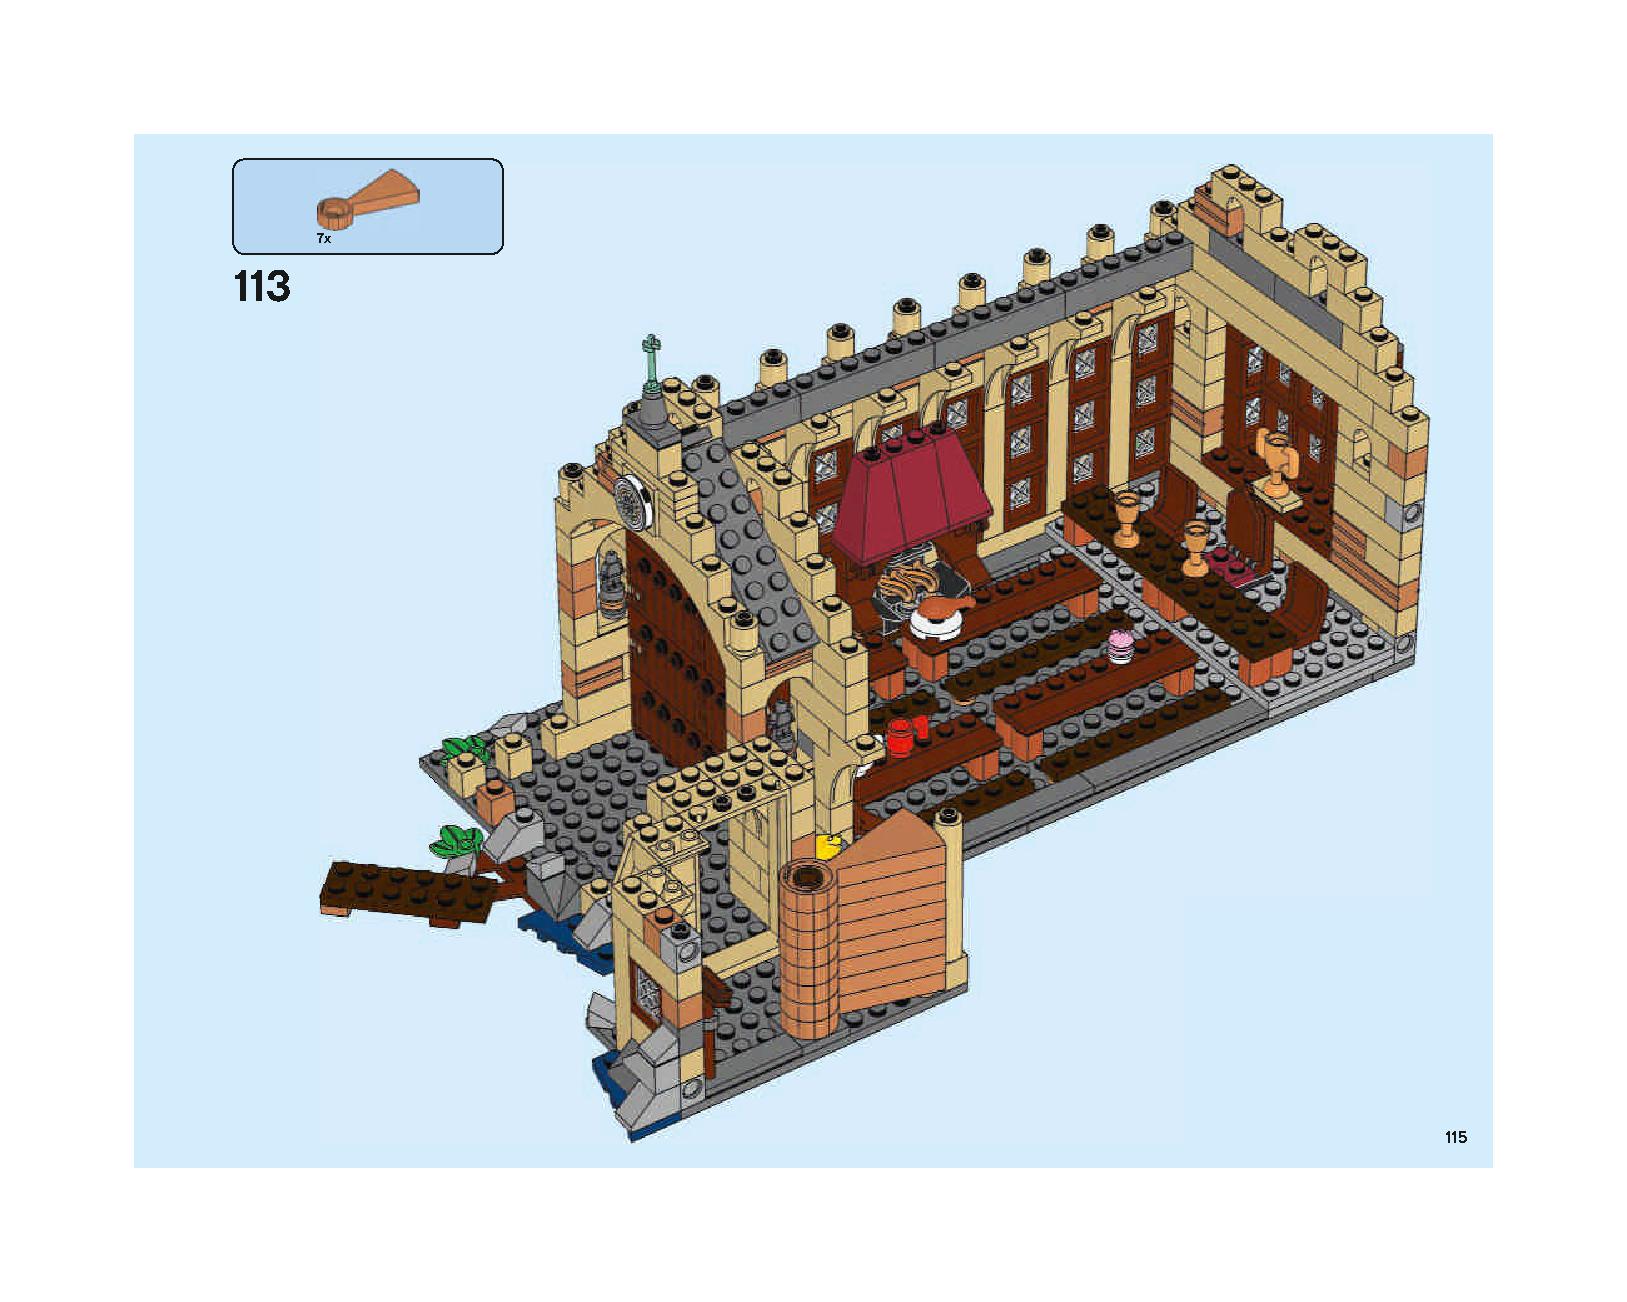 ホグワーツの大広間 75954 レゴの商品情報 レゴの説明書・組立方法 115 page